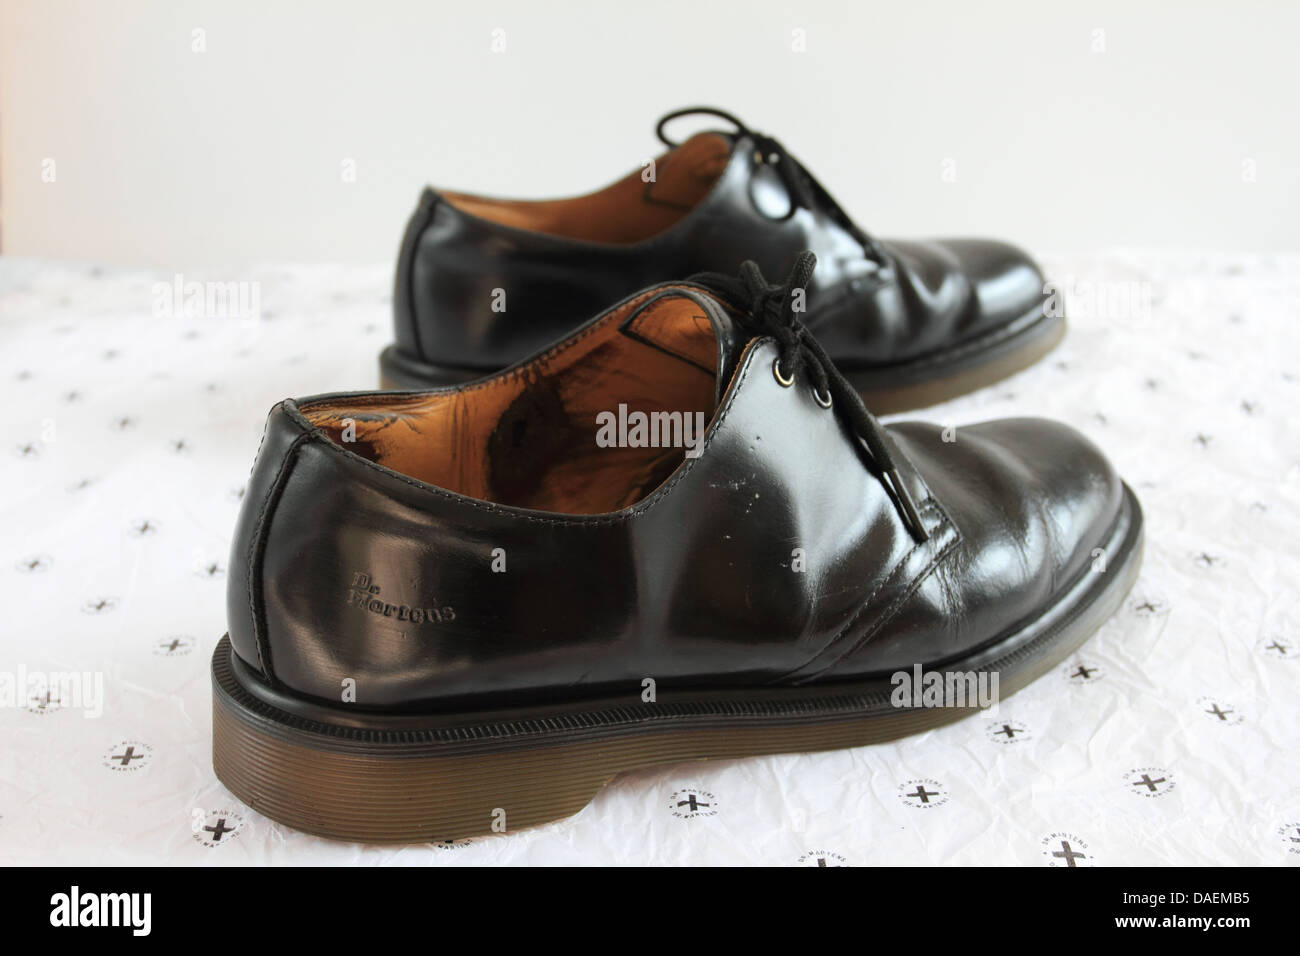 1461 Dr. Martens scarpe, Air wair, scarpe nere, Norfolk, Regno Unito Foto Stock